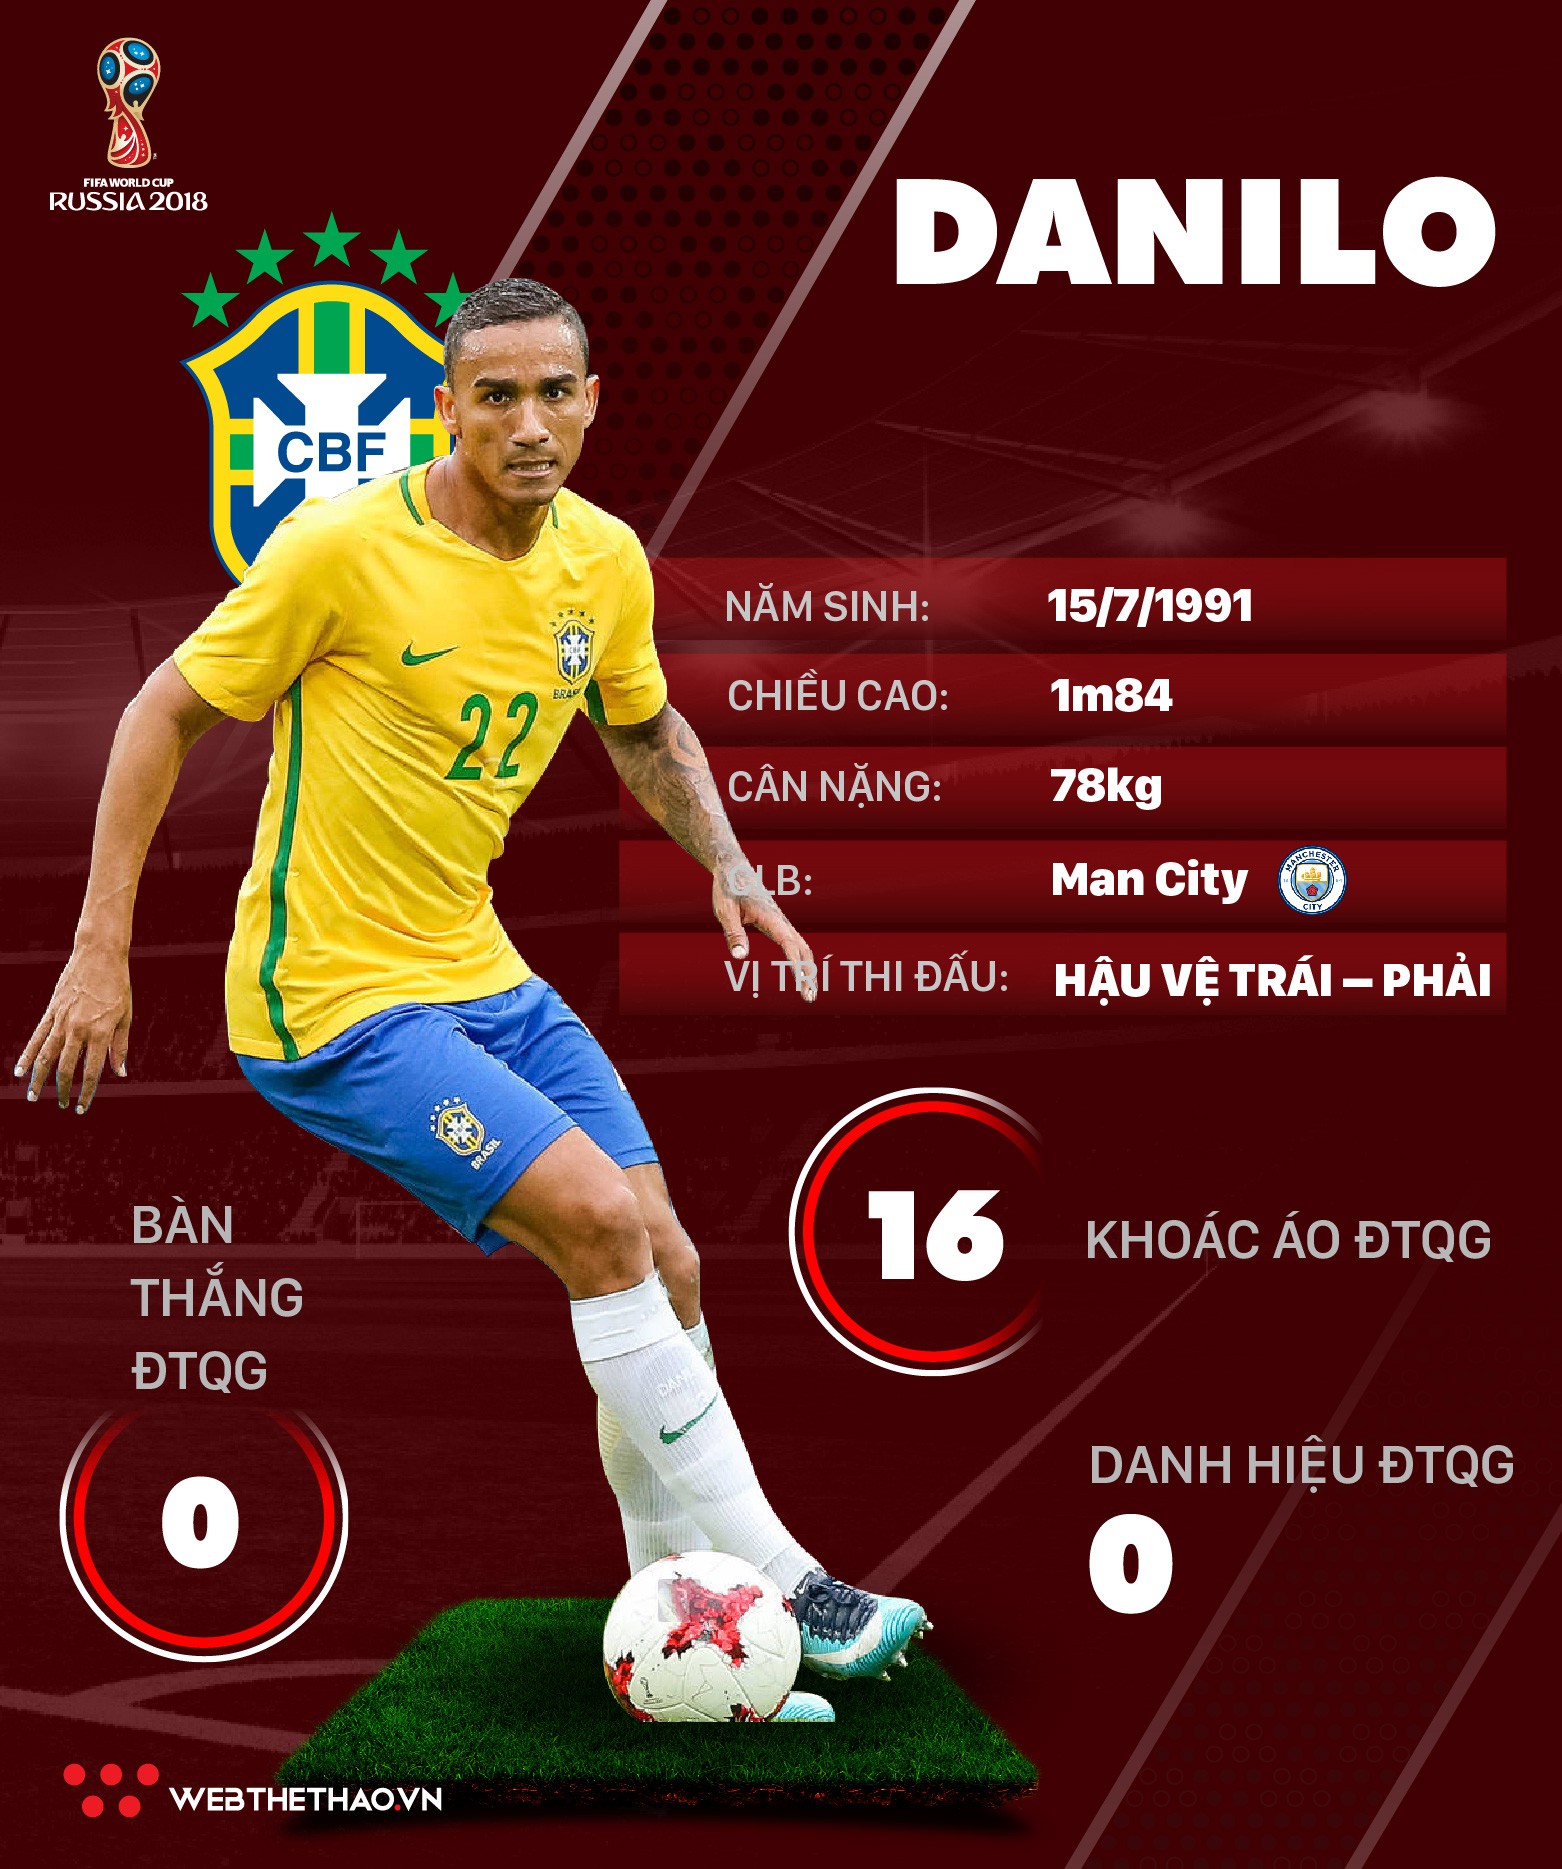 Thông tin cầu thủ Danilo của ĐT Brazil dự World Cup 2018